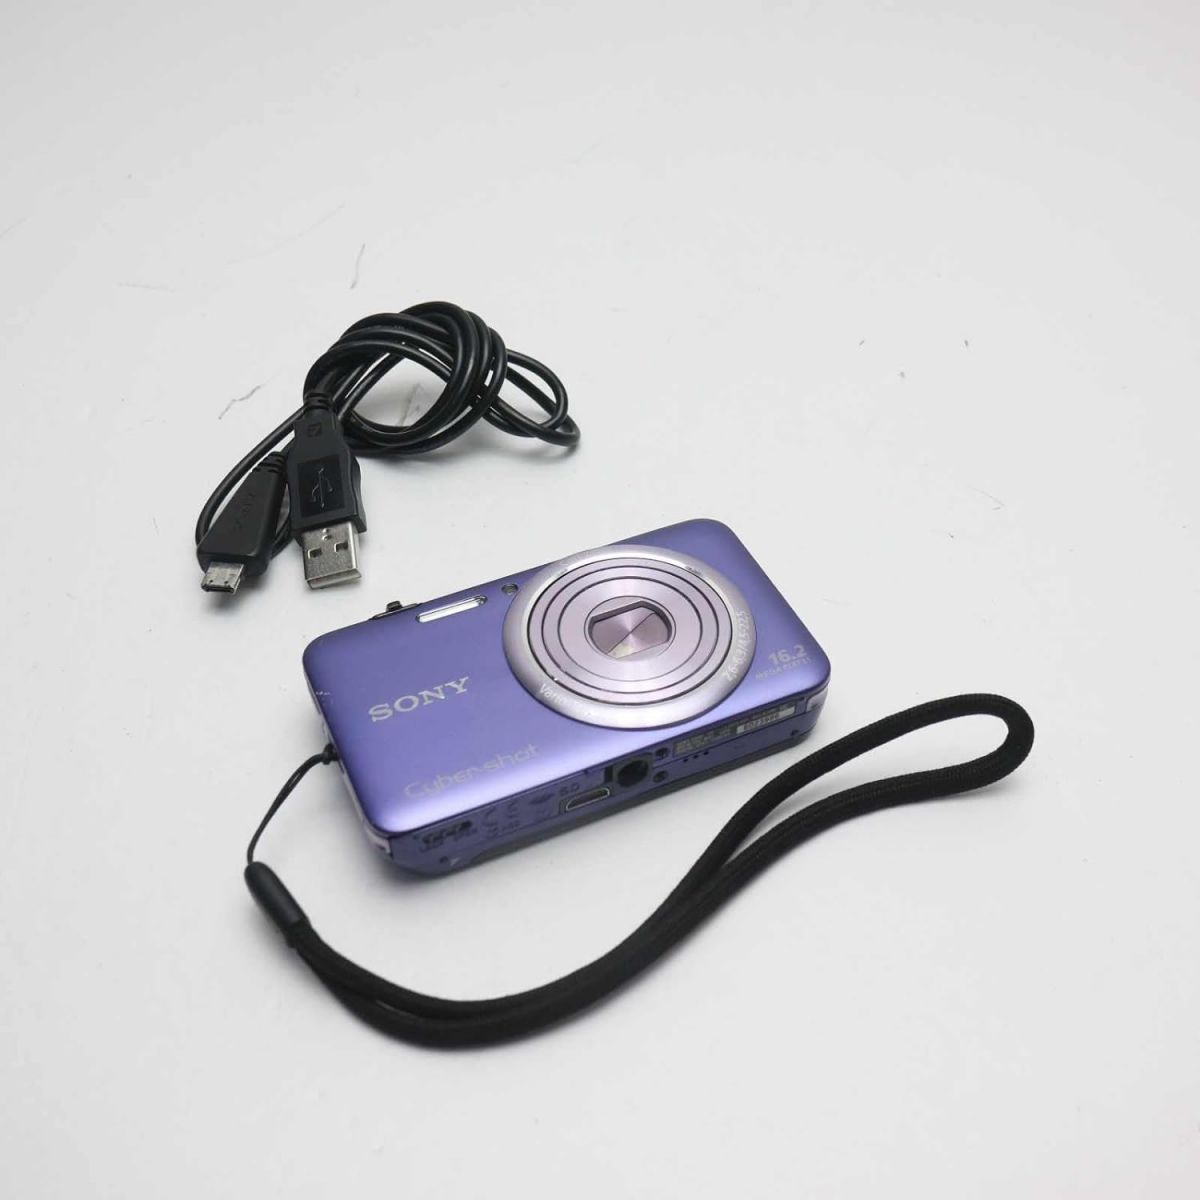 【中古】ソニー SONY デジタルカメラ Cybershot WX7 1620万画素CMOS 光学x5 ブルー DSC-WX7/L